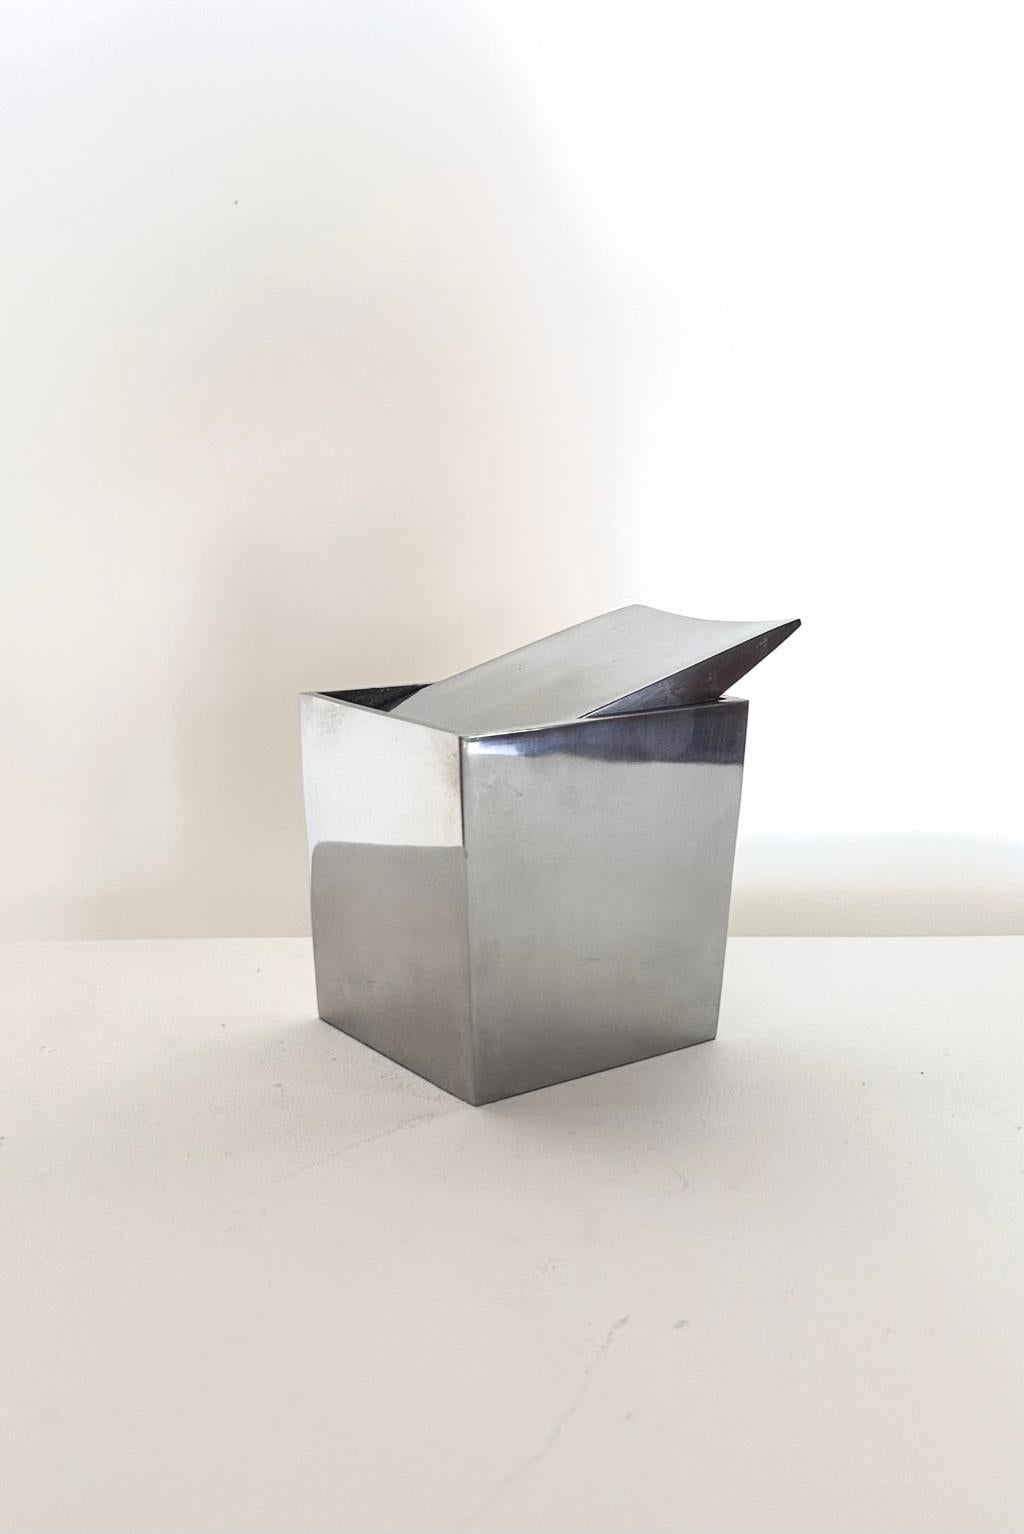 
Cendrier de table moderne français en aluminium Ray Hollis par Philippe Starck, 1986
Fantastique et iconique cendrier de table mod. Ray Hollis avec base rectangulaire en aluminium. La structure a tendance à se rétrécir vers le bas. 
Le cendrier a